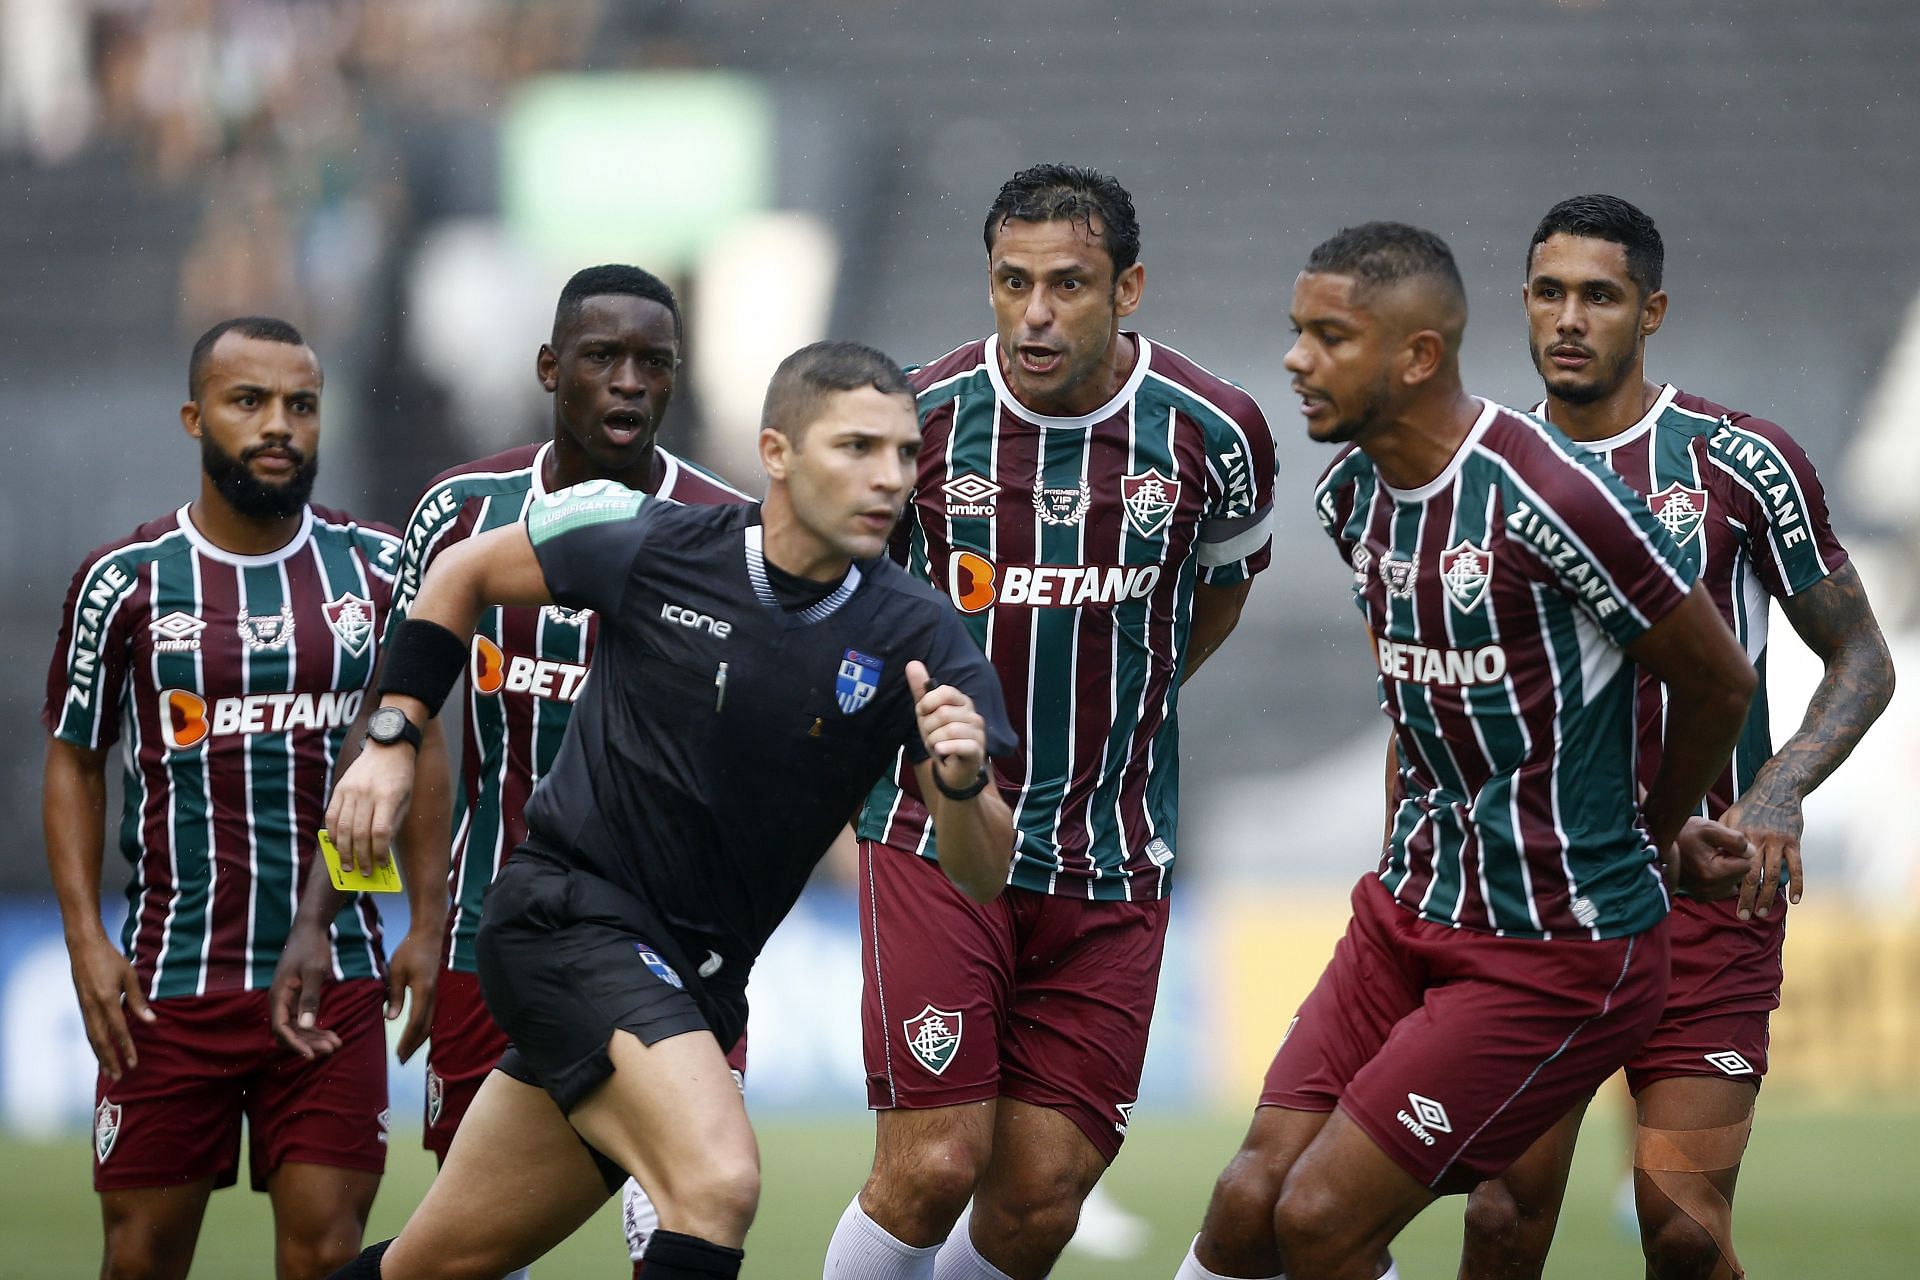 Fluminense face Millonarios in their upcoming Copa Libertadores fixture on Tuesday